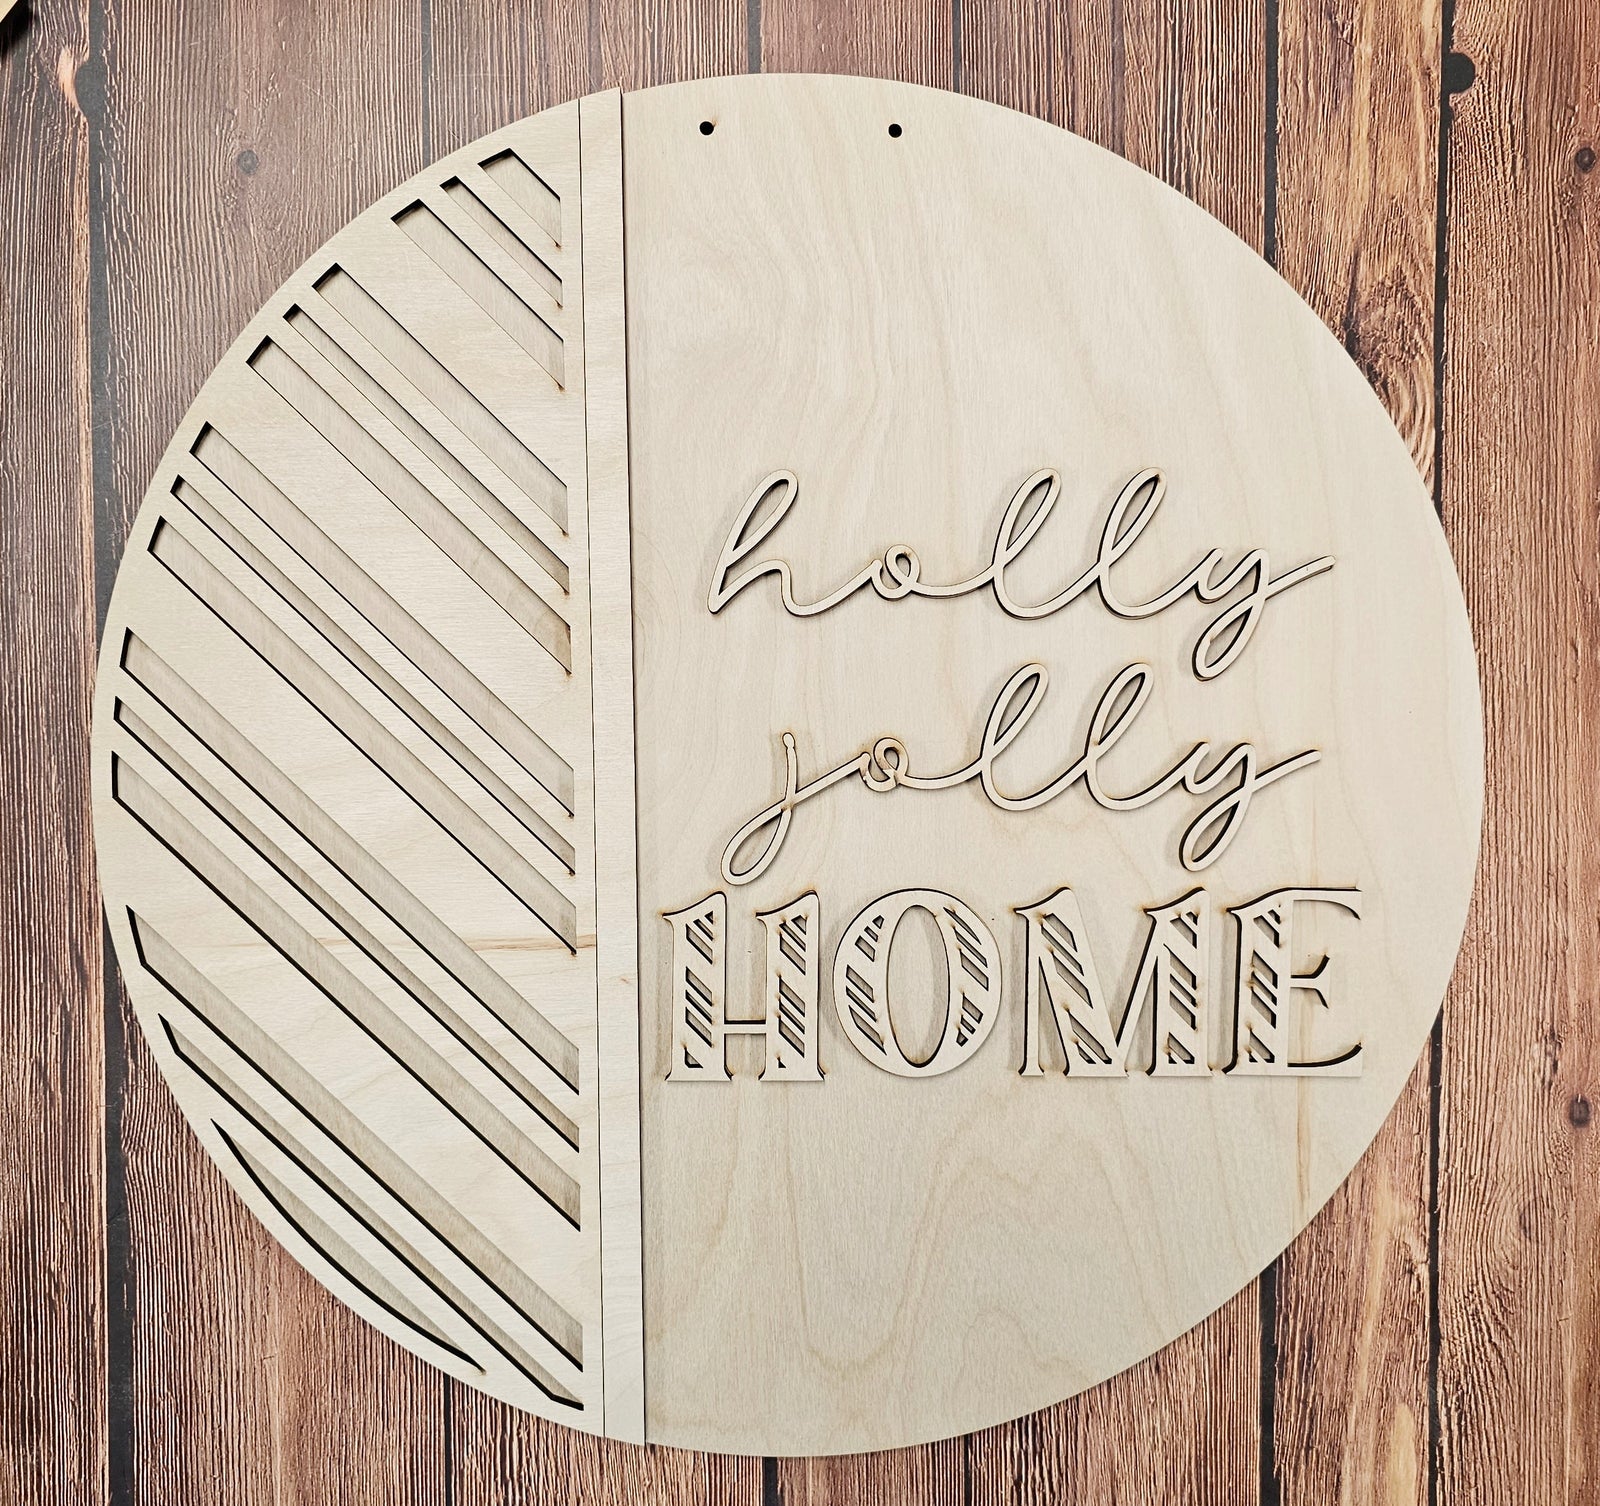 DIY Holly Jolly Home Door Hanger